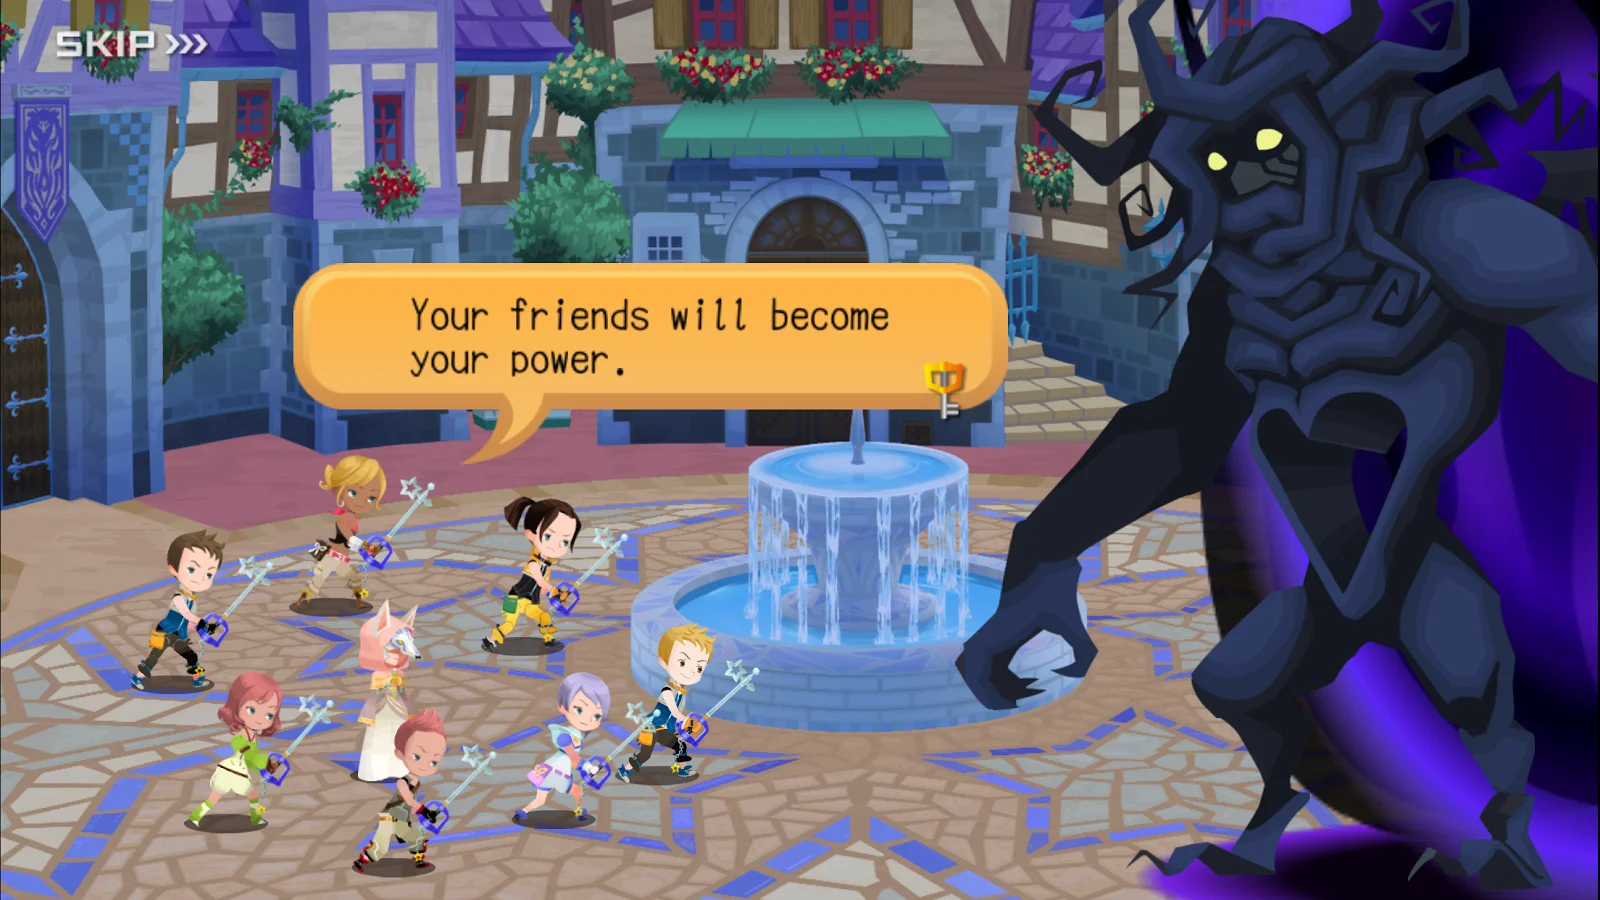 Полный пересказ сюжета всей серии Kingdom Hearts - фото 3